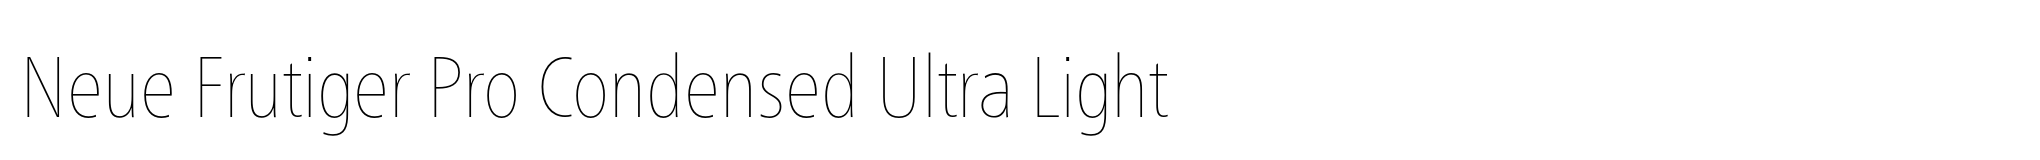 Neue Frutiger Pro Condensed Ultra Light image